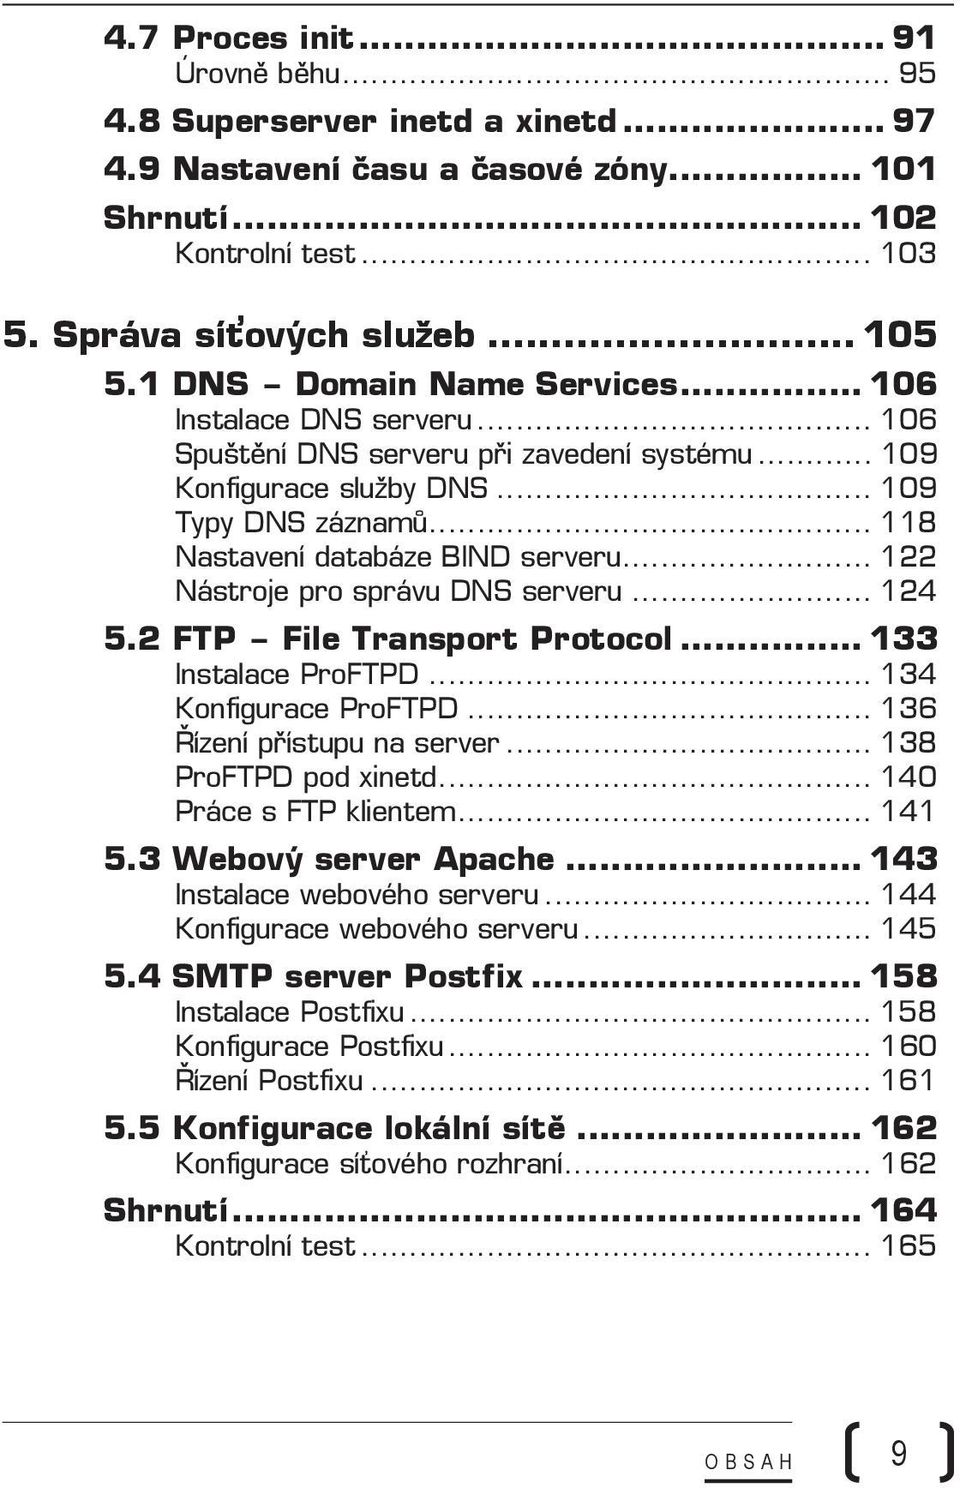 .. 122 Nástroje pro správu DNS serveru... 124 5.2 FTP File Transport Protocol... 133 Instalace ProFTPD... 134 Konfigurace ProFTPD... 136 Řízení přístupu na server... 138 ProFTPD pod xinetd.